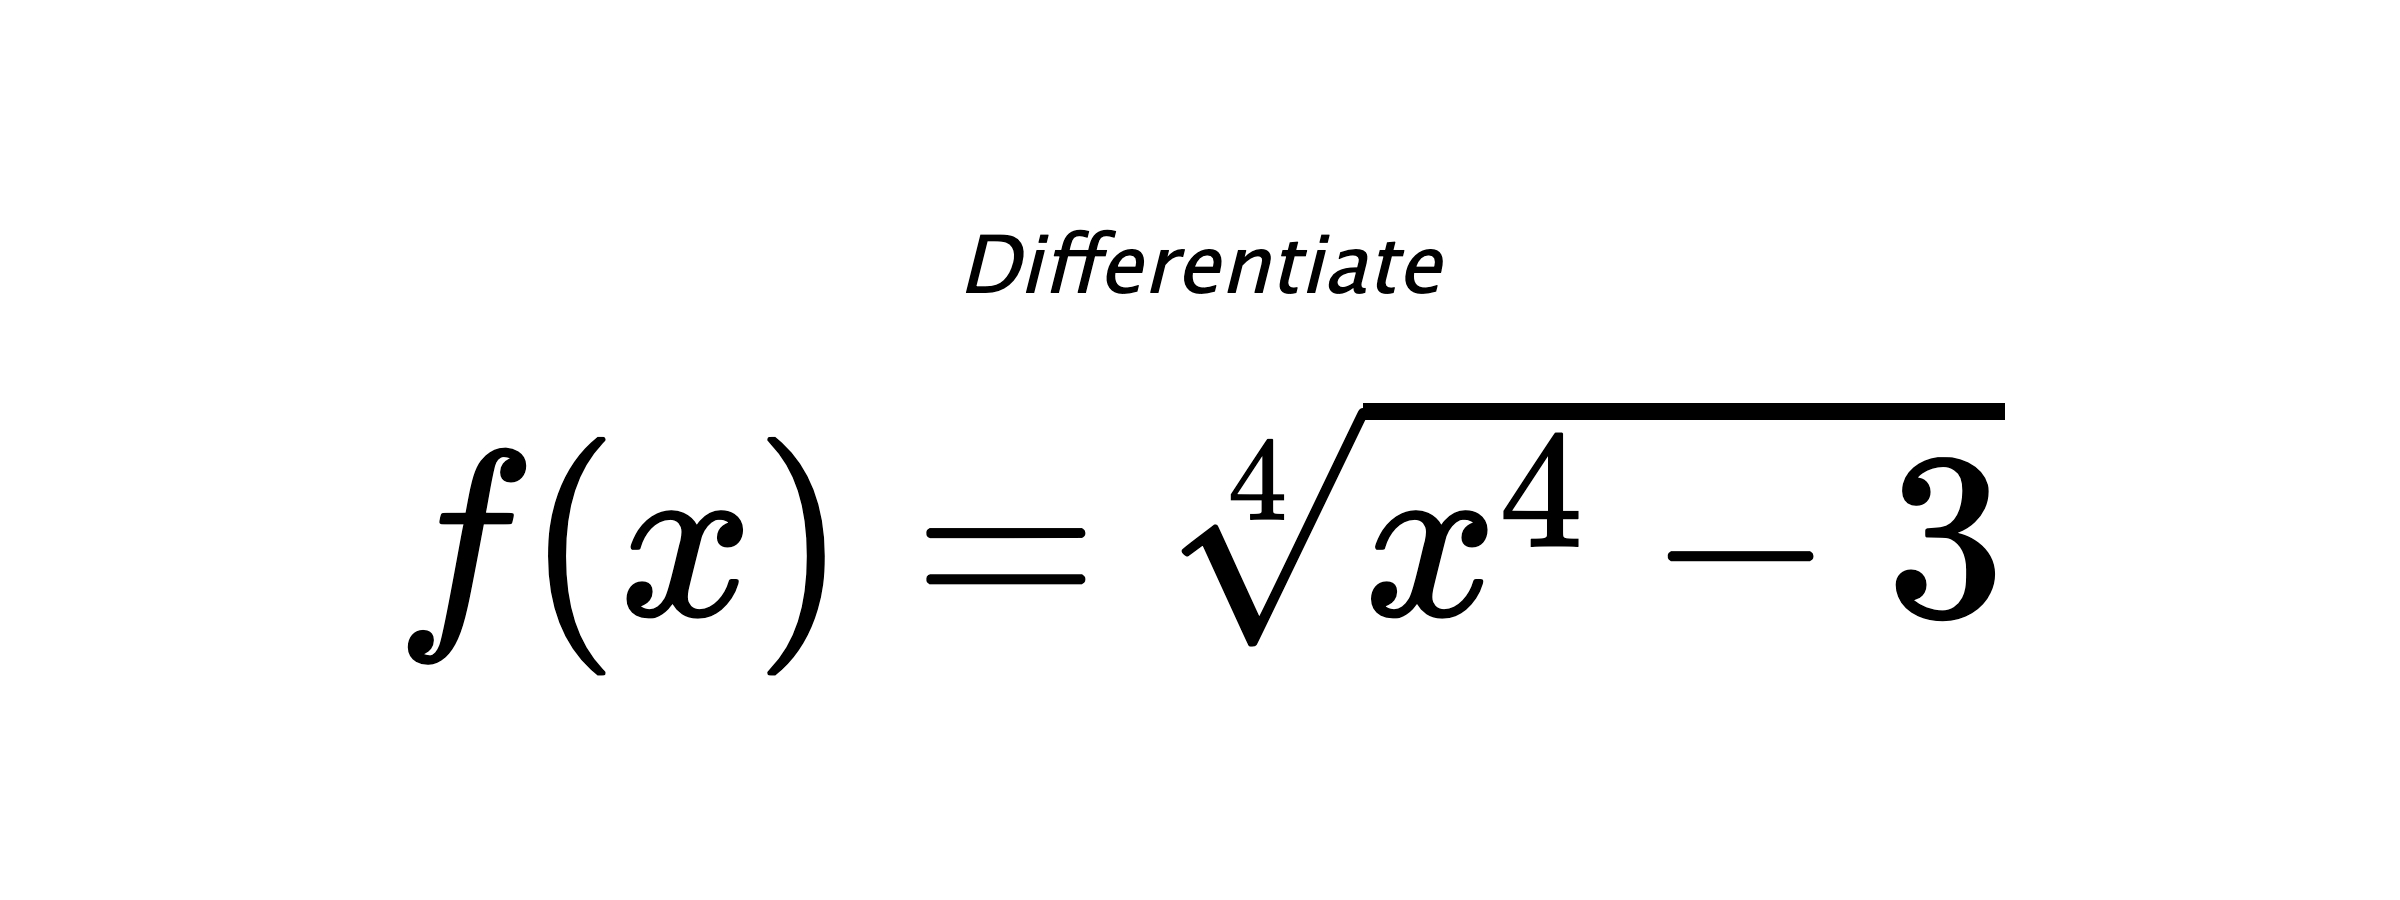 Differentiate $ f(x) = \sqrt[4]{x^{4} - 3} $